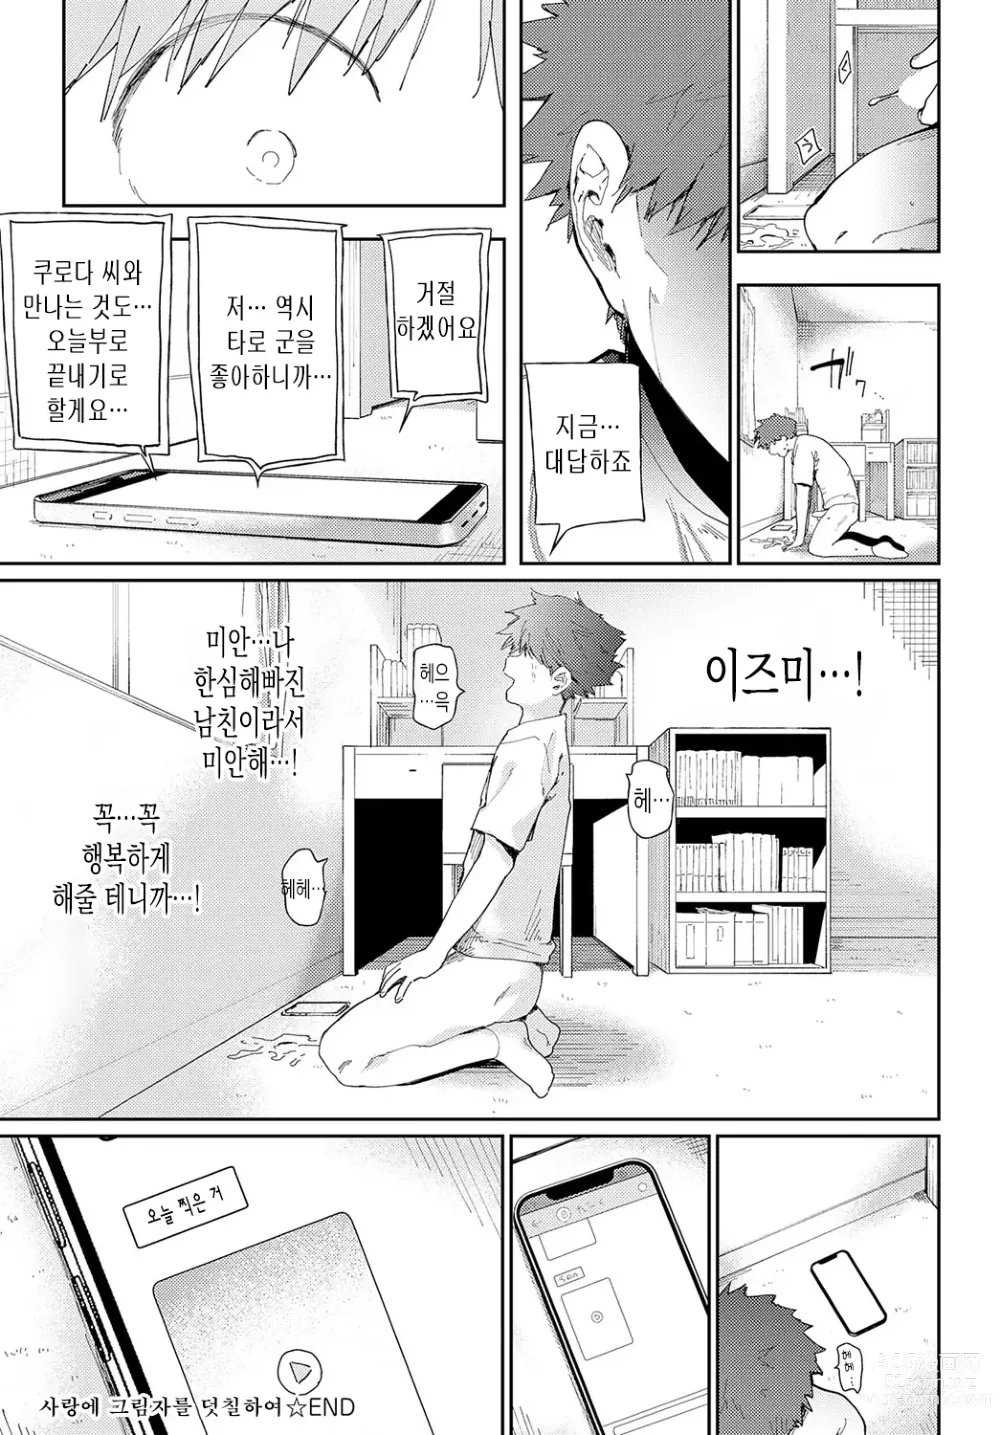 Page 32 of manga 사랑에 그림자를 덧칠하여